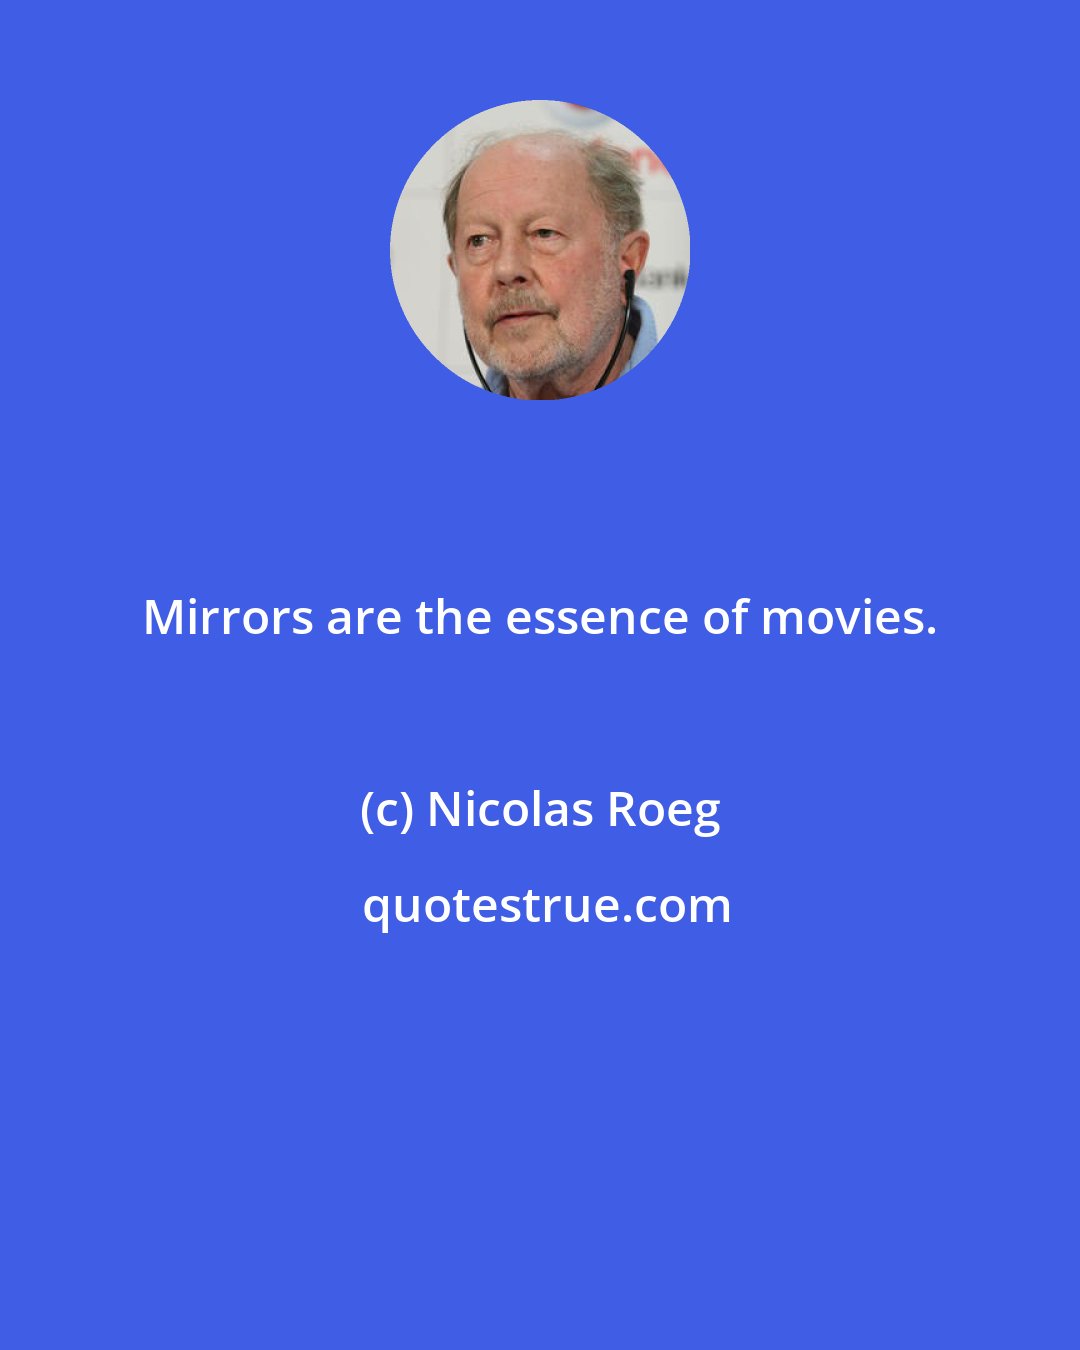 Nicolas Roeg: Mirrors are the essence of movies.